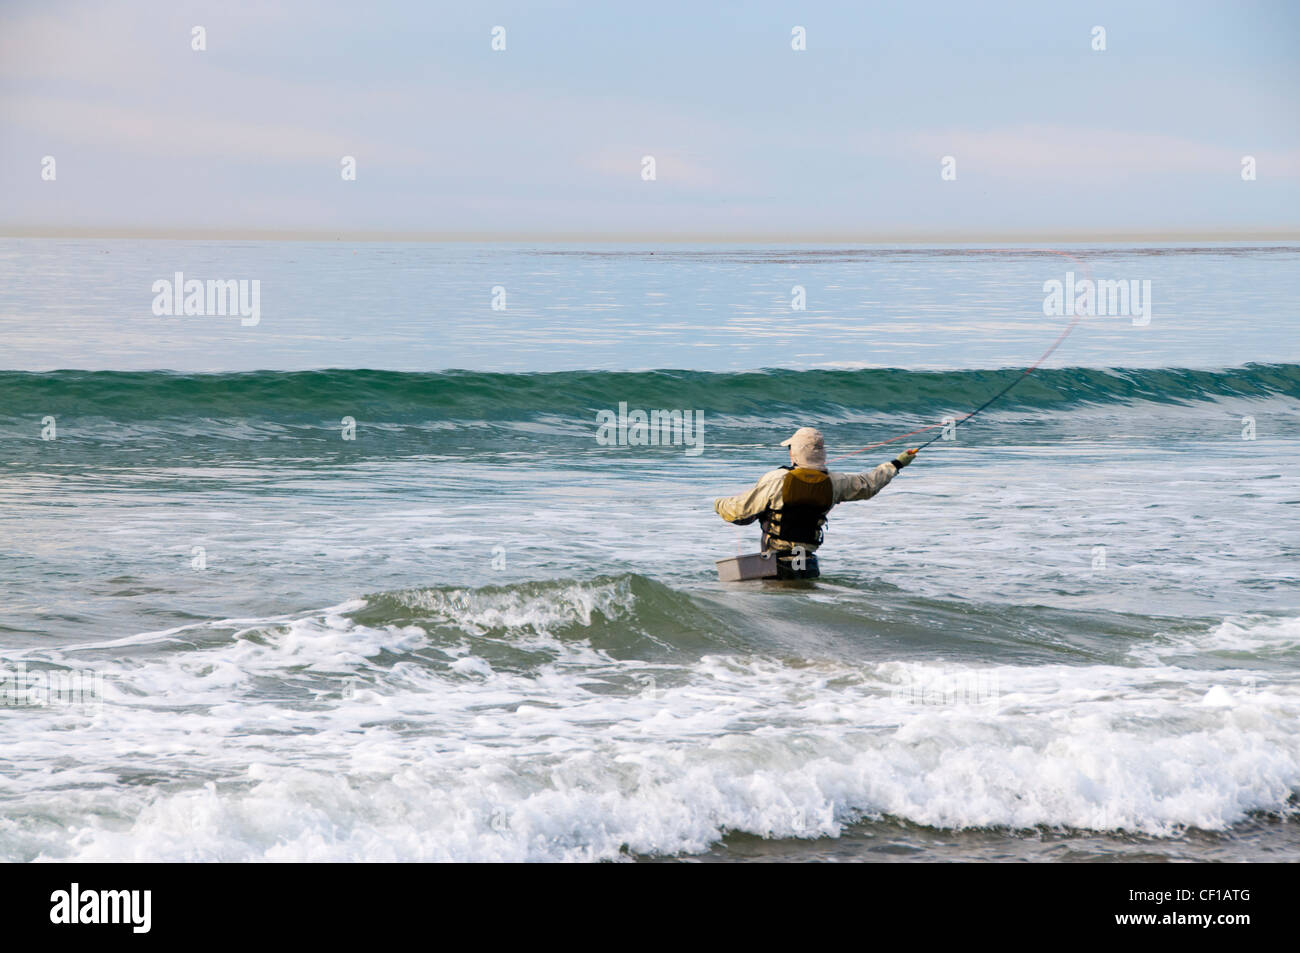 Redaktionellen Journalismus journalistische stürmischen Abenteuer Wassersport Strand Passanten Mann männlich Winter Foto-Journali Surfen zu helfen Stockfoto